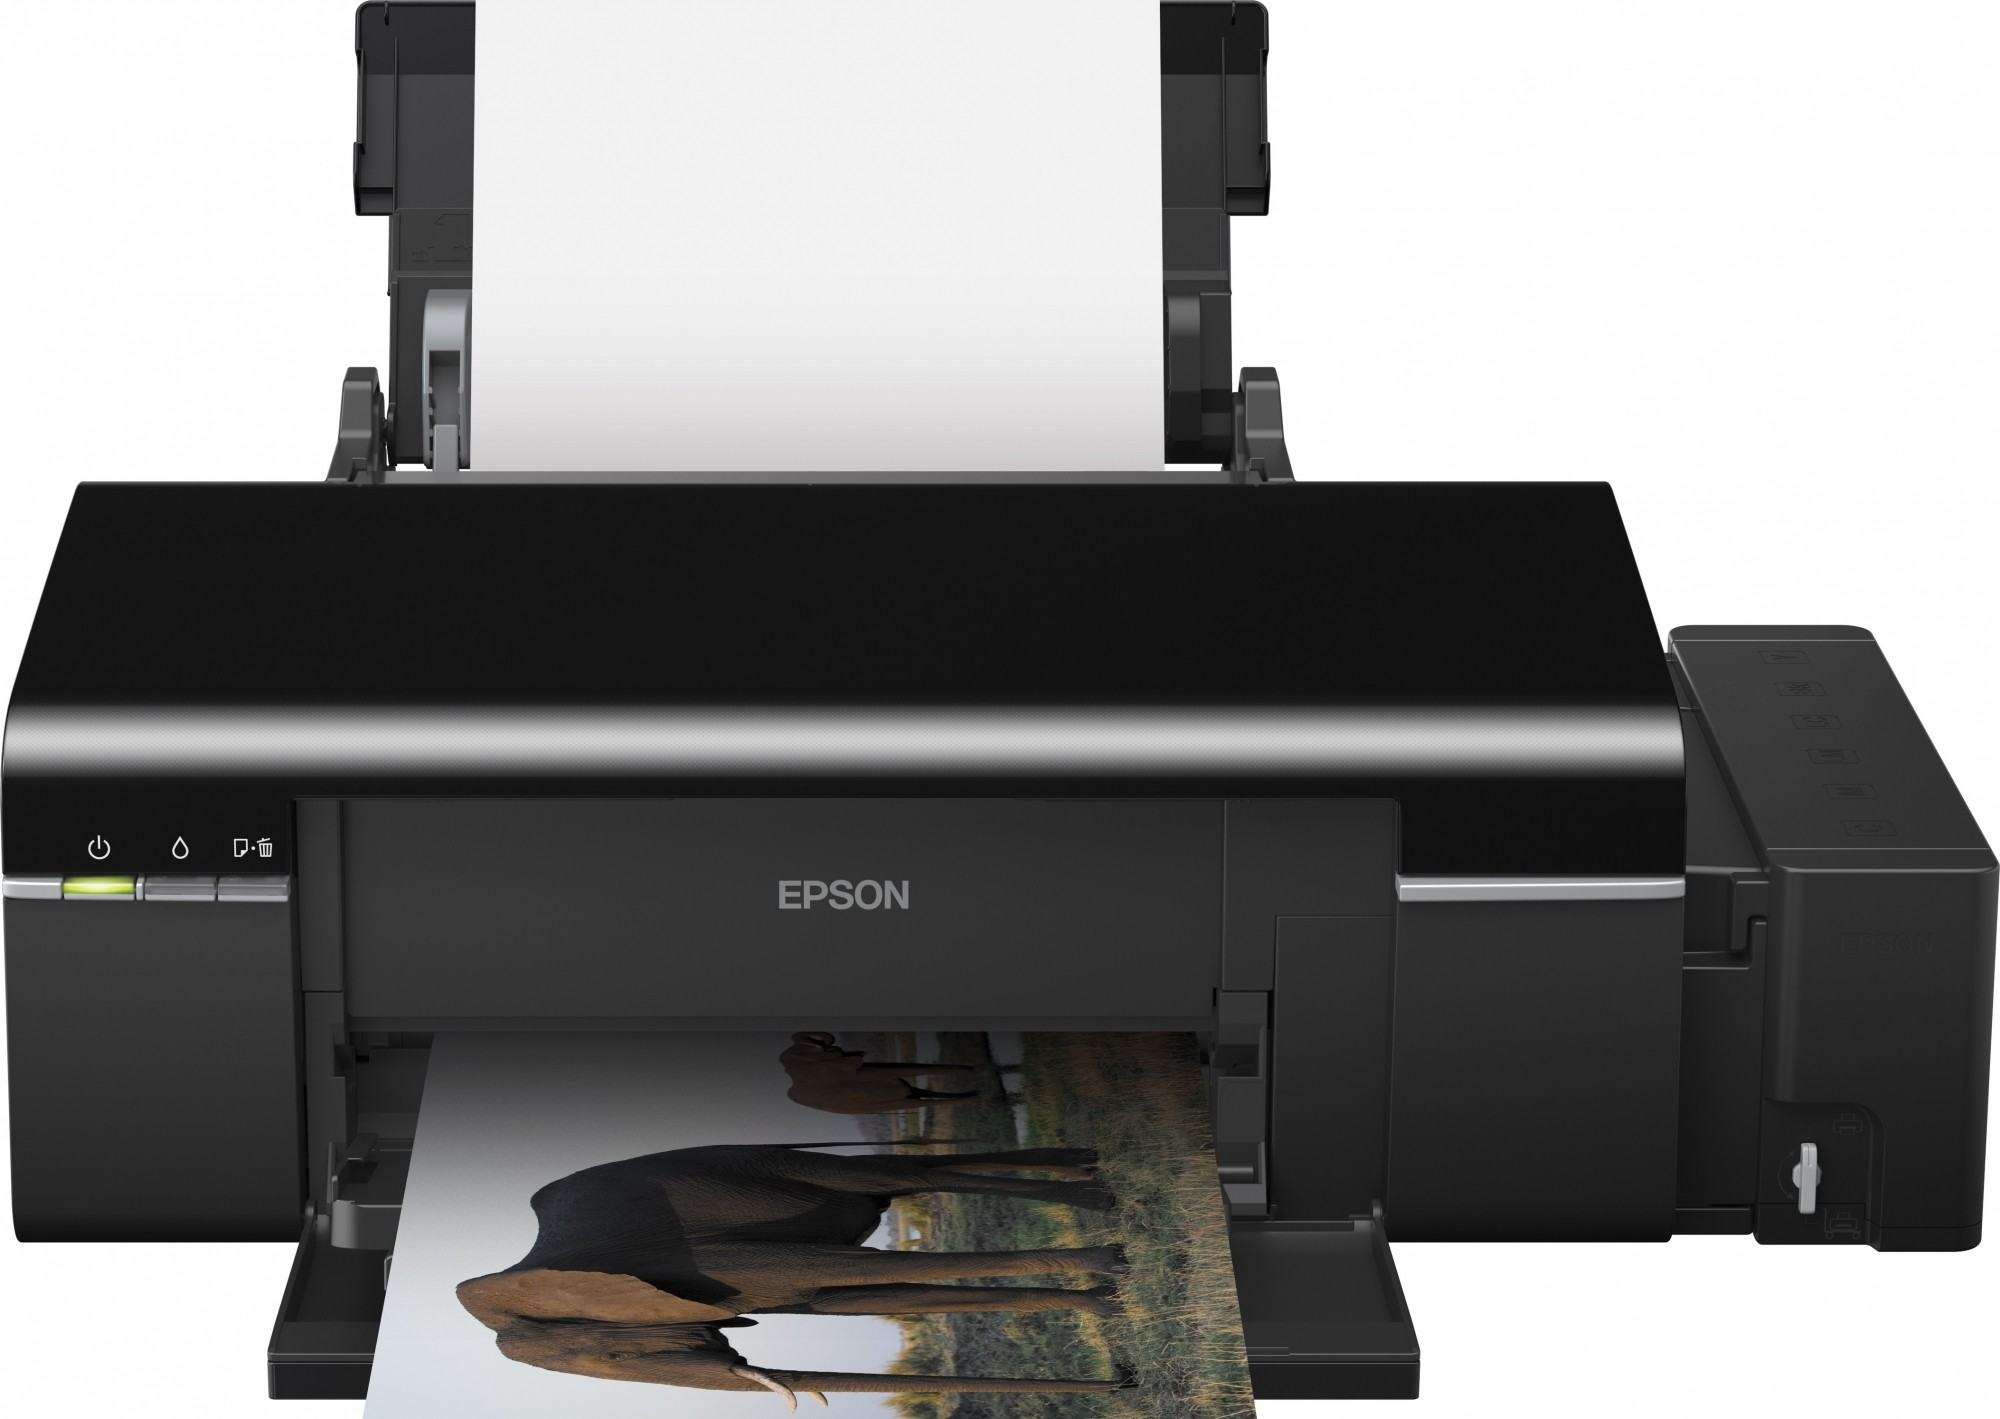 Эпсон л 800. Принтер струйный Epson l805. Принтер Epson l800. Принтер Epson цветной струйный 805. Принтер Epson l800 (СНПЧ).